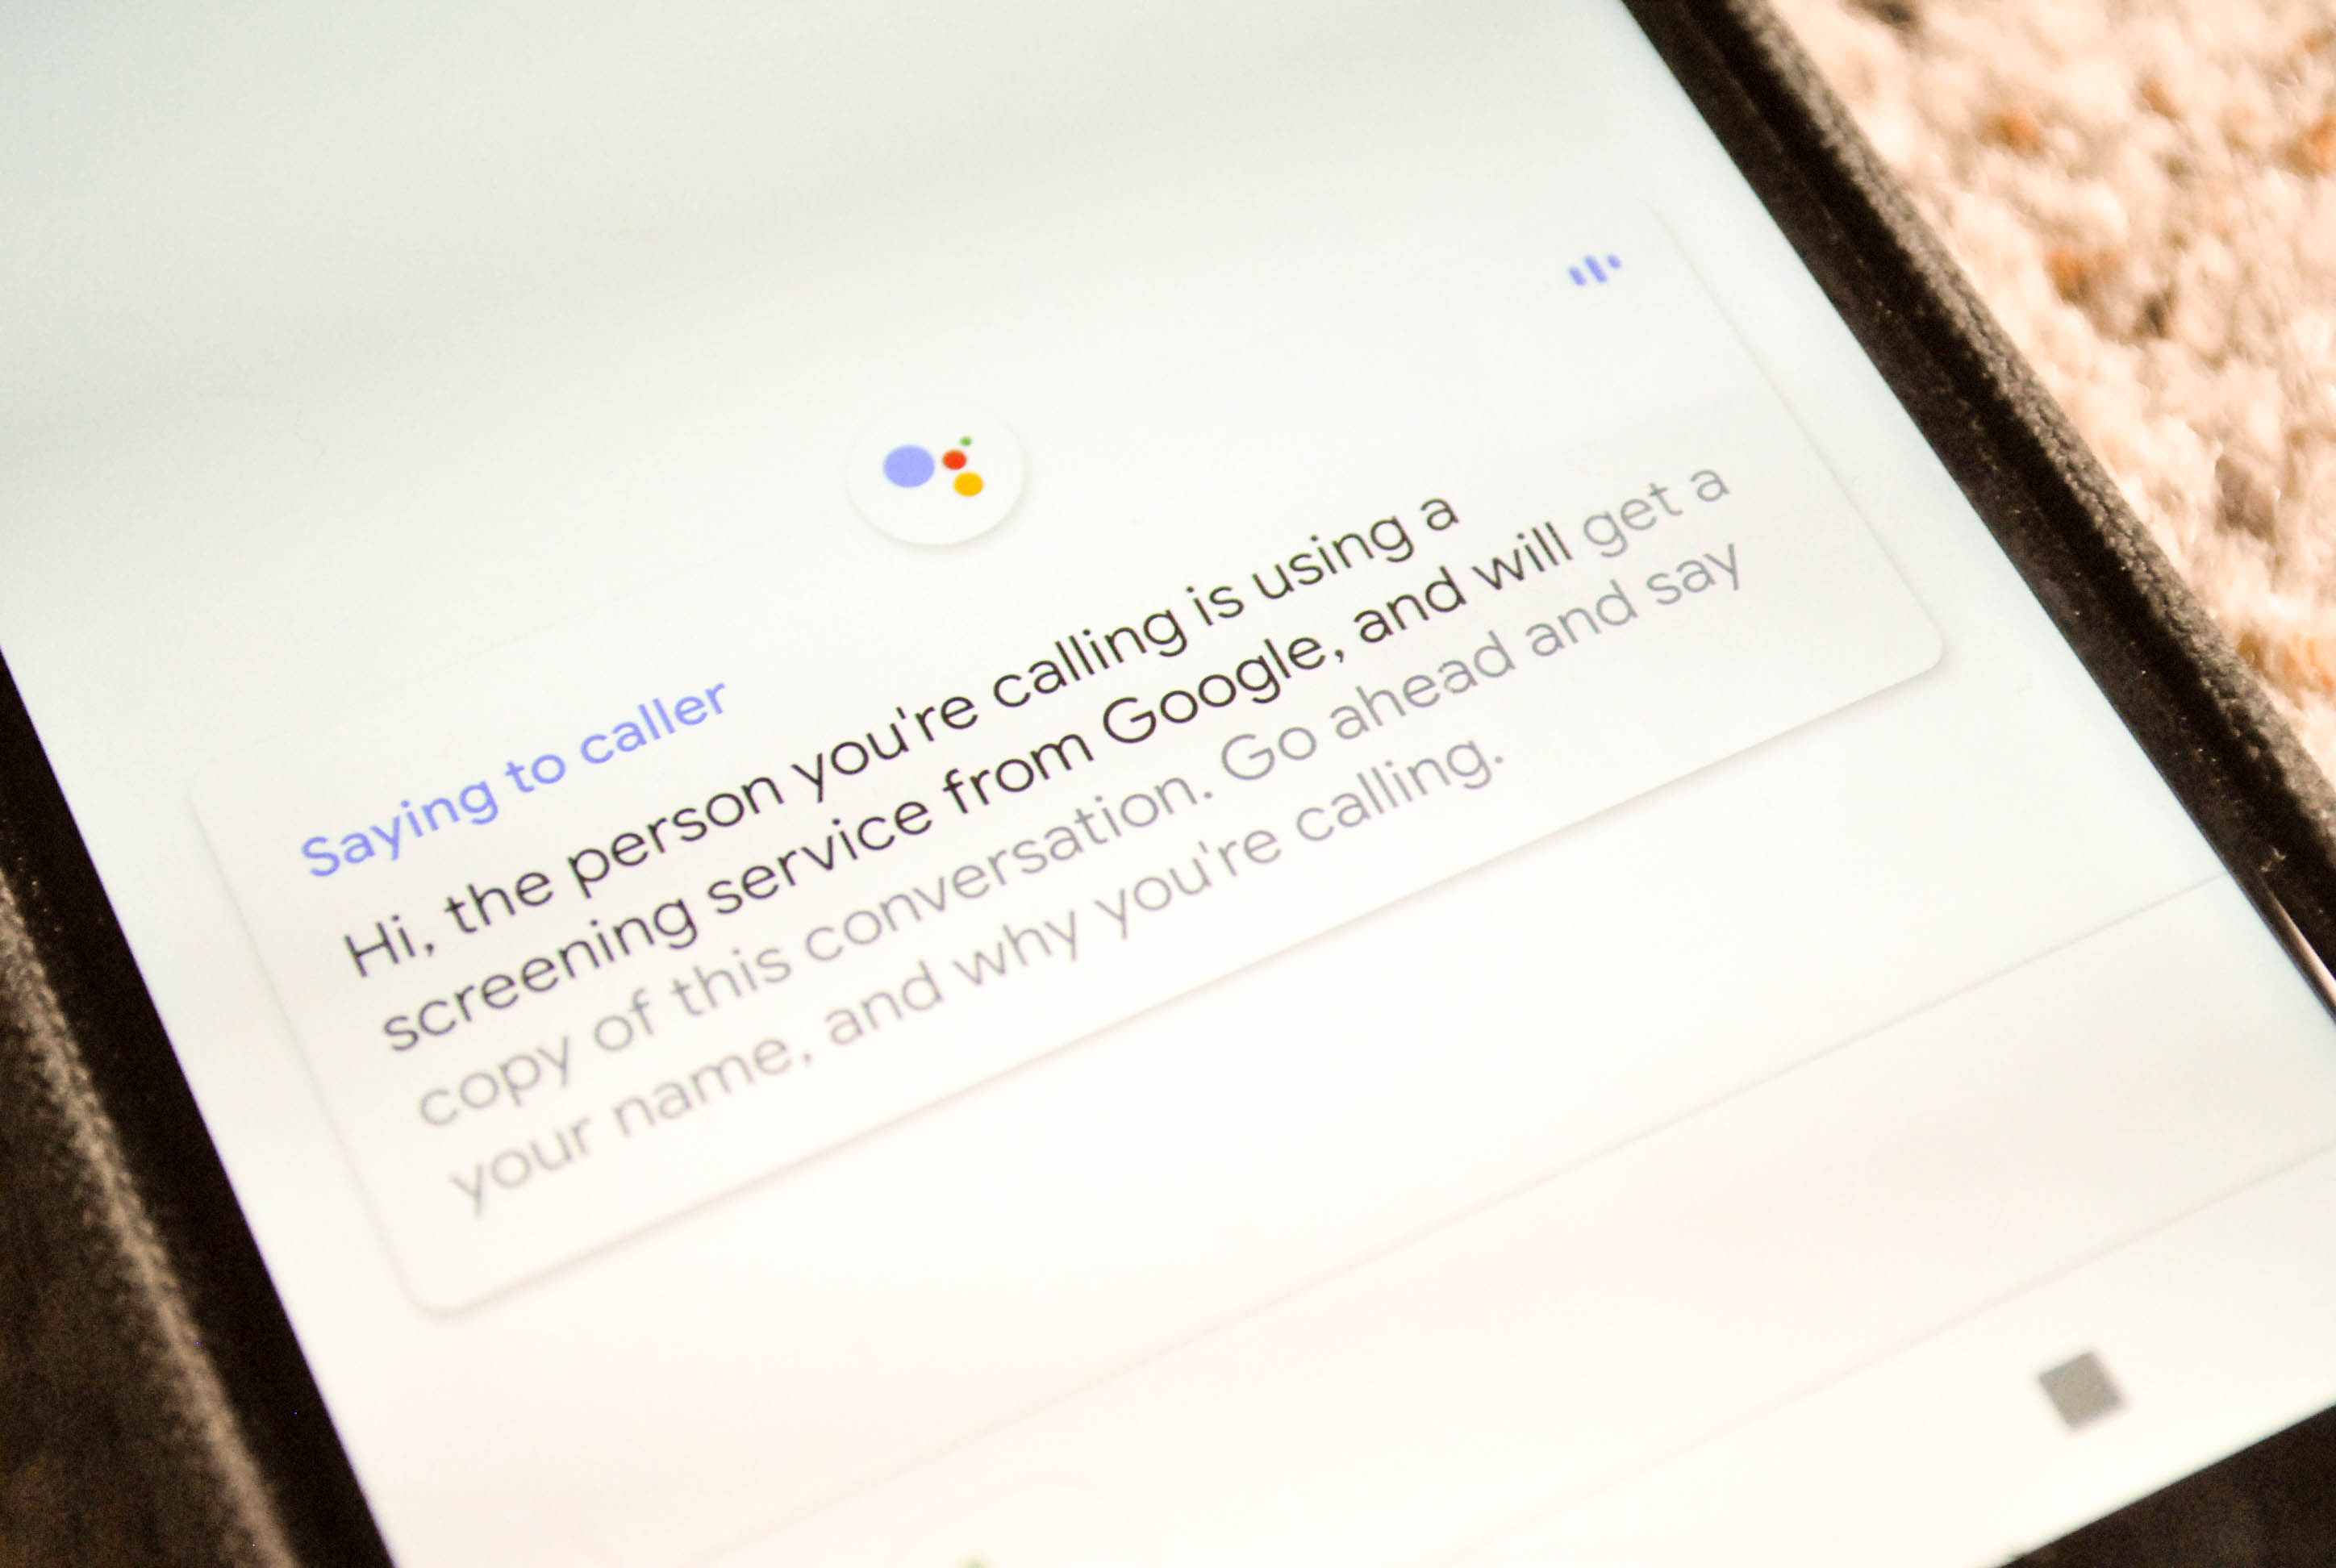 Google Assistant visar en avskrift för skärmade samtal.